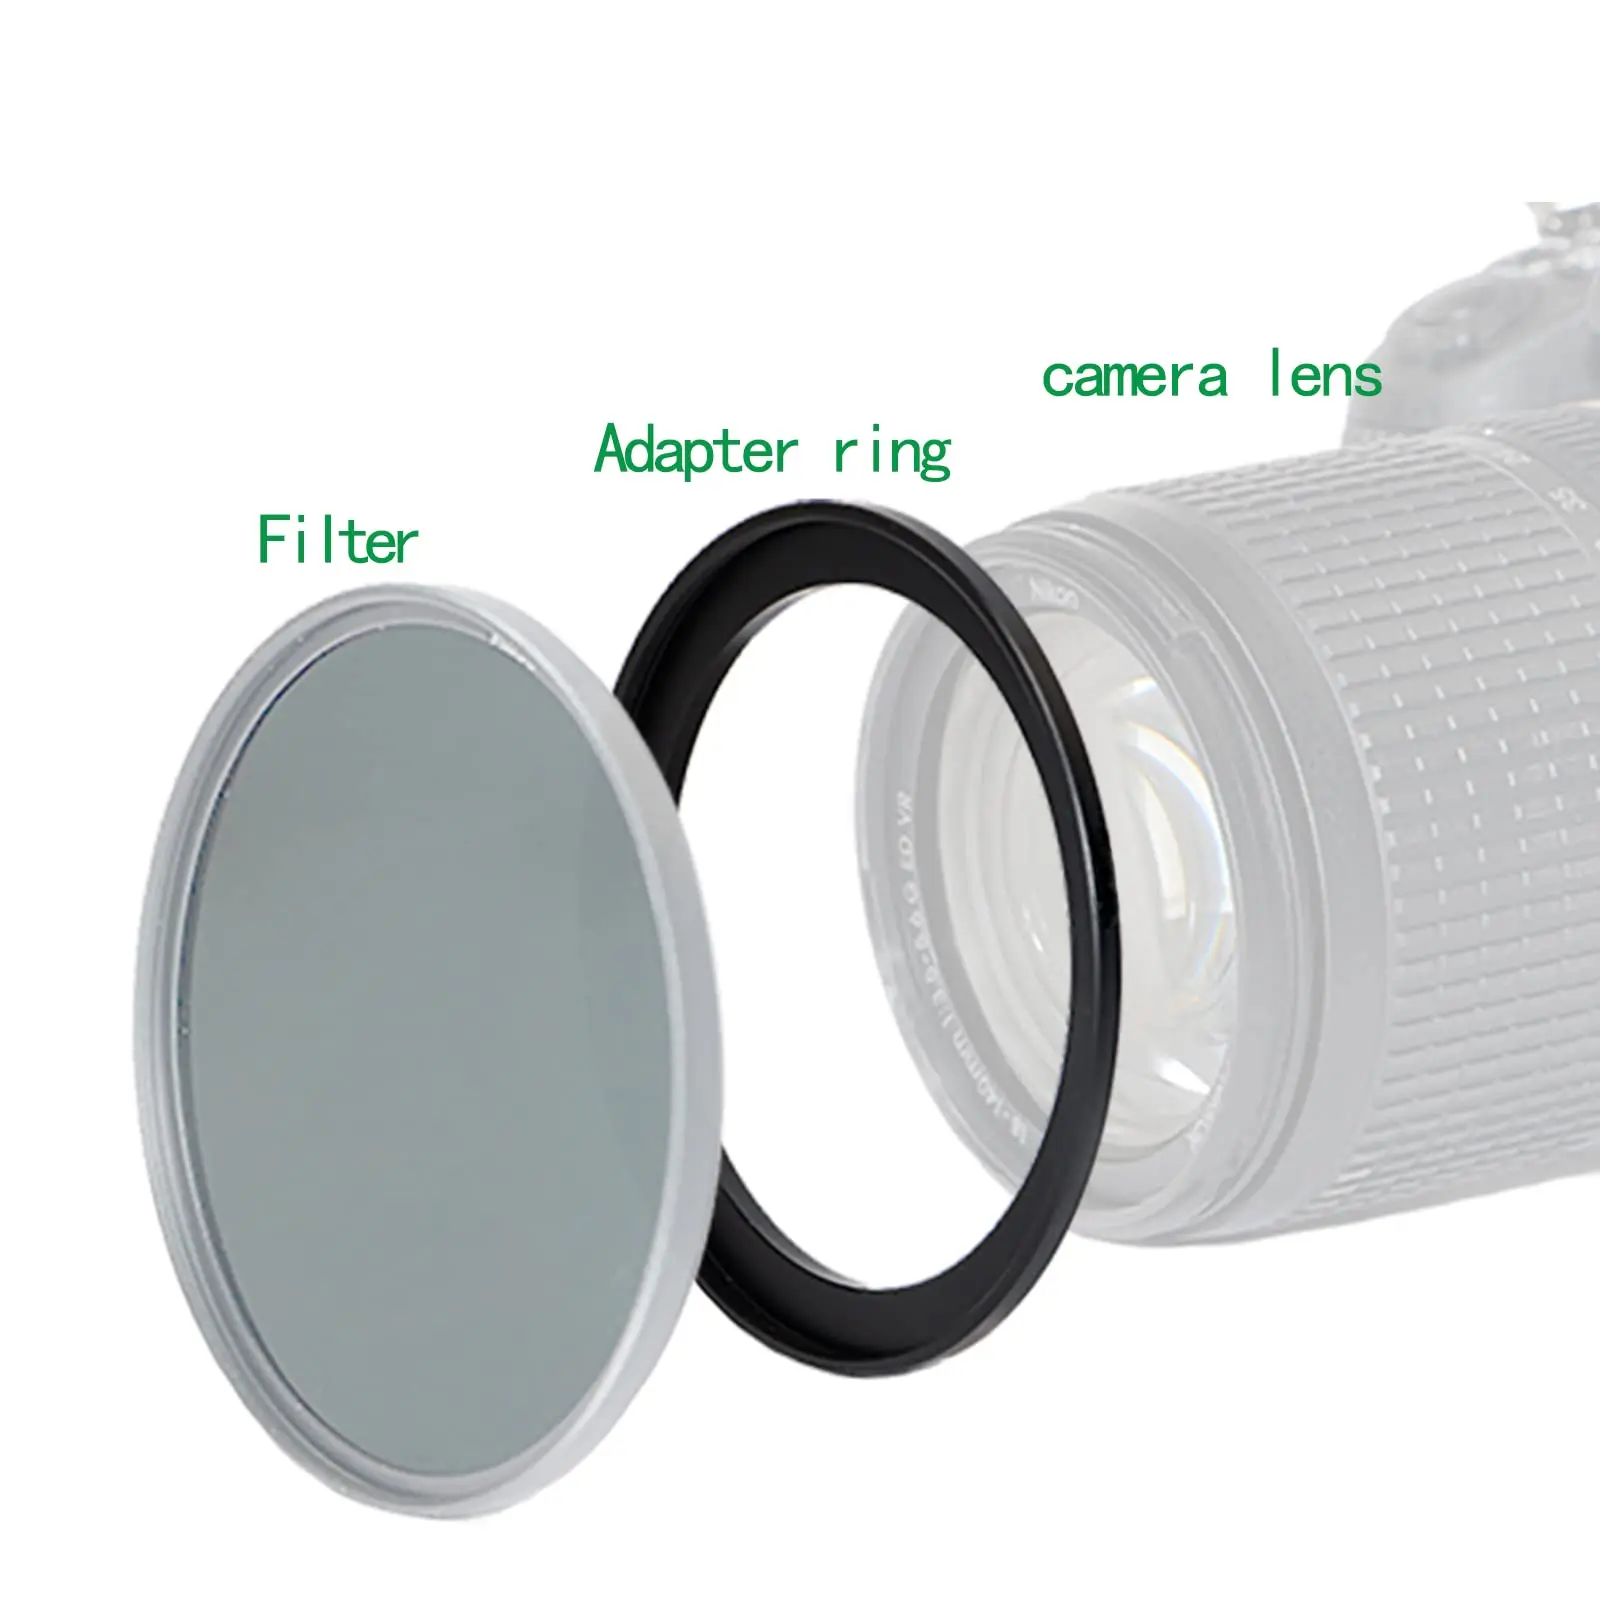 알루미늄 블랙 스텝 업 필터 링, 캐논 니콘 소니 DSLR 카메라 렌즈용, 30-49mm, 30-49mm, 30-49mm, 필터 어댑터 렌즈 어댑터